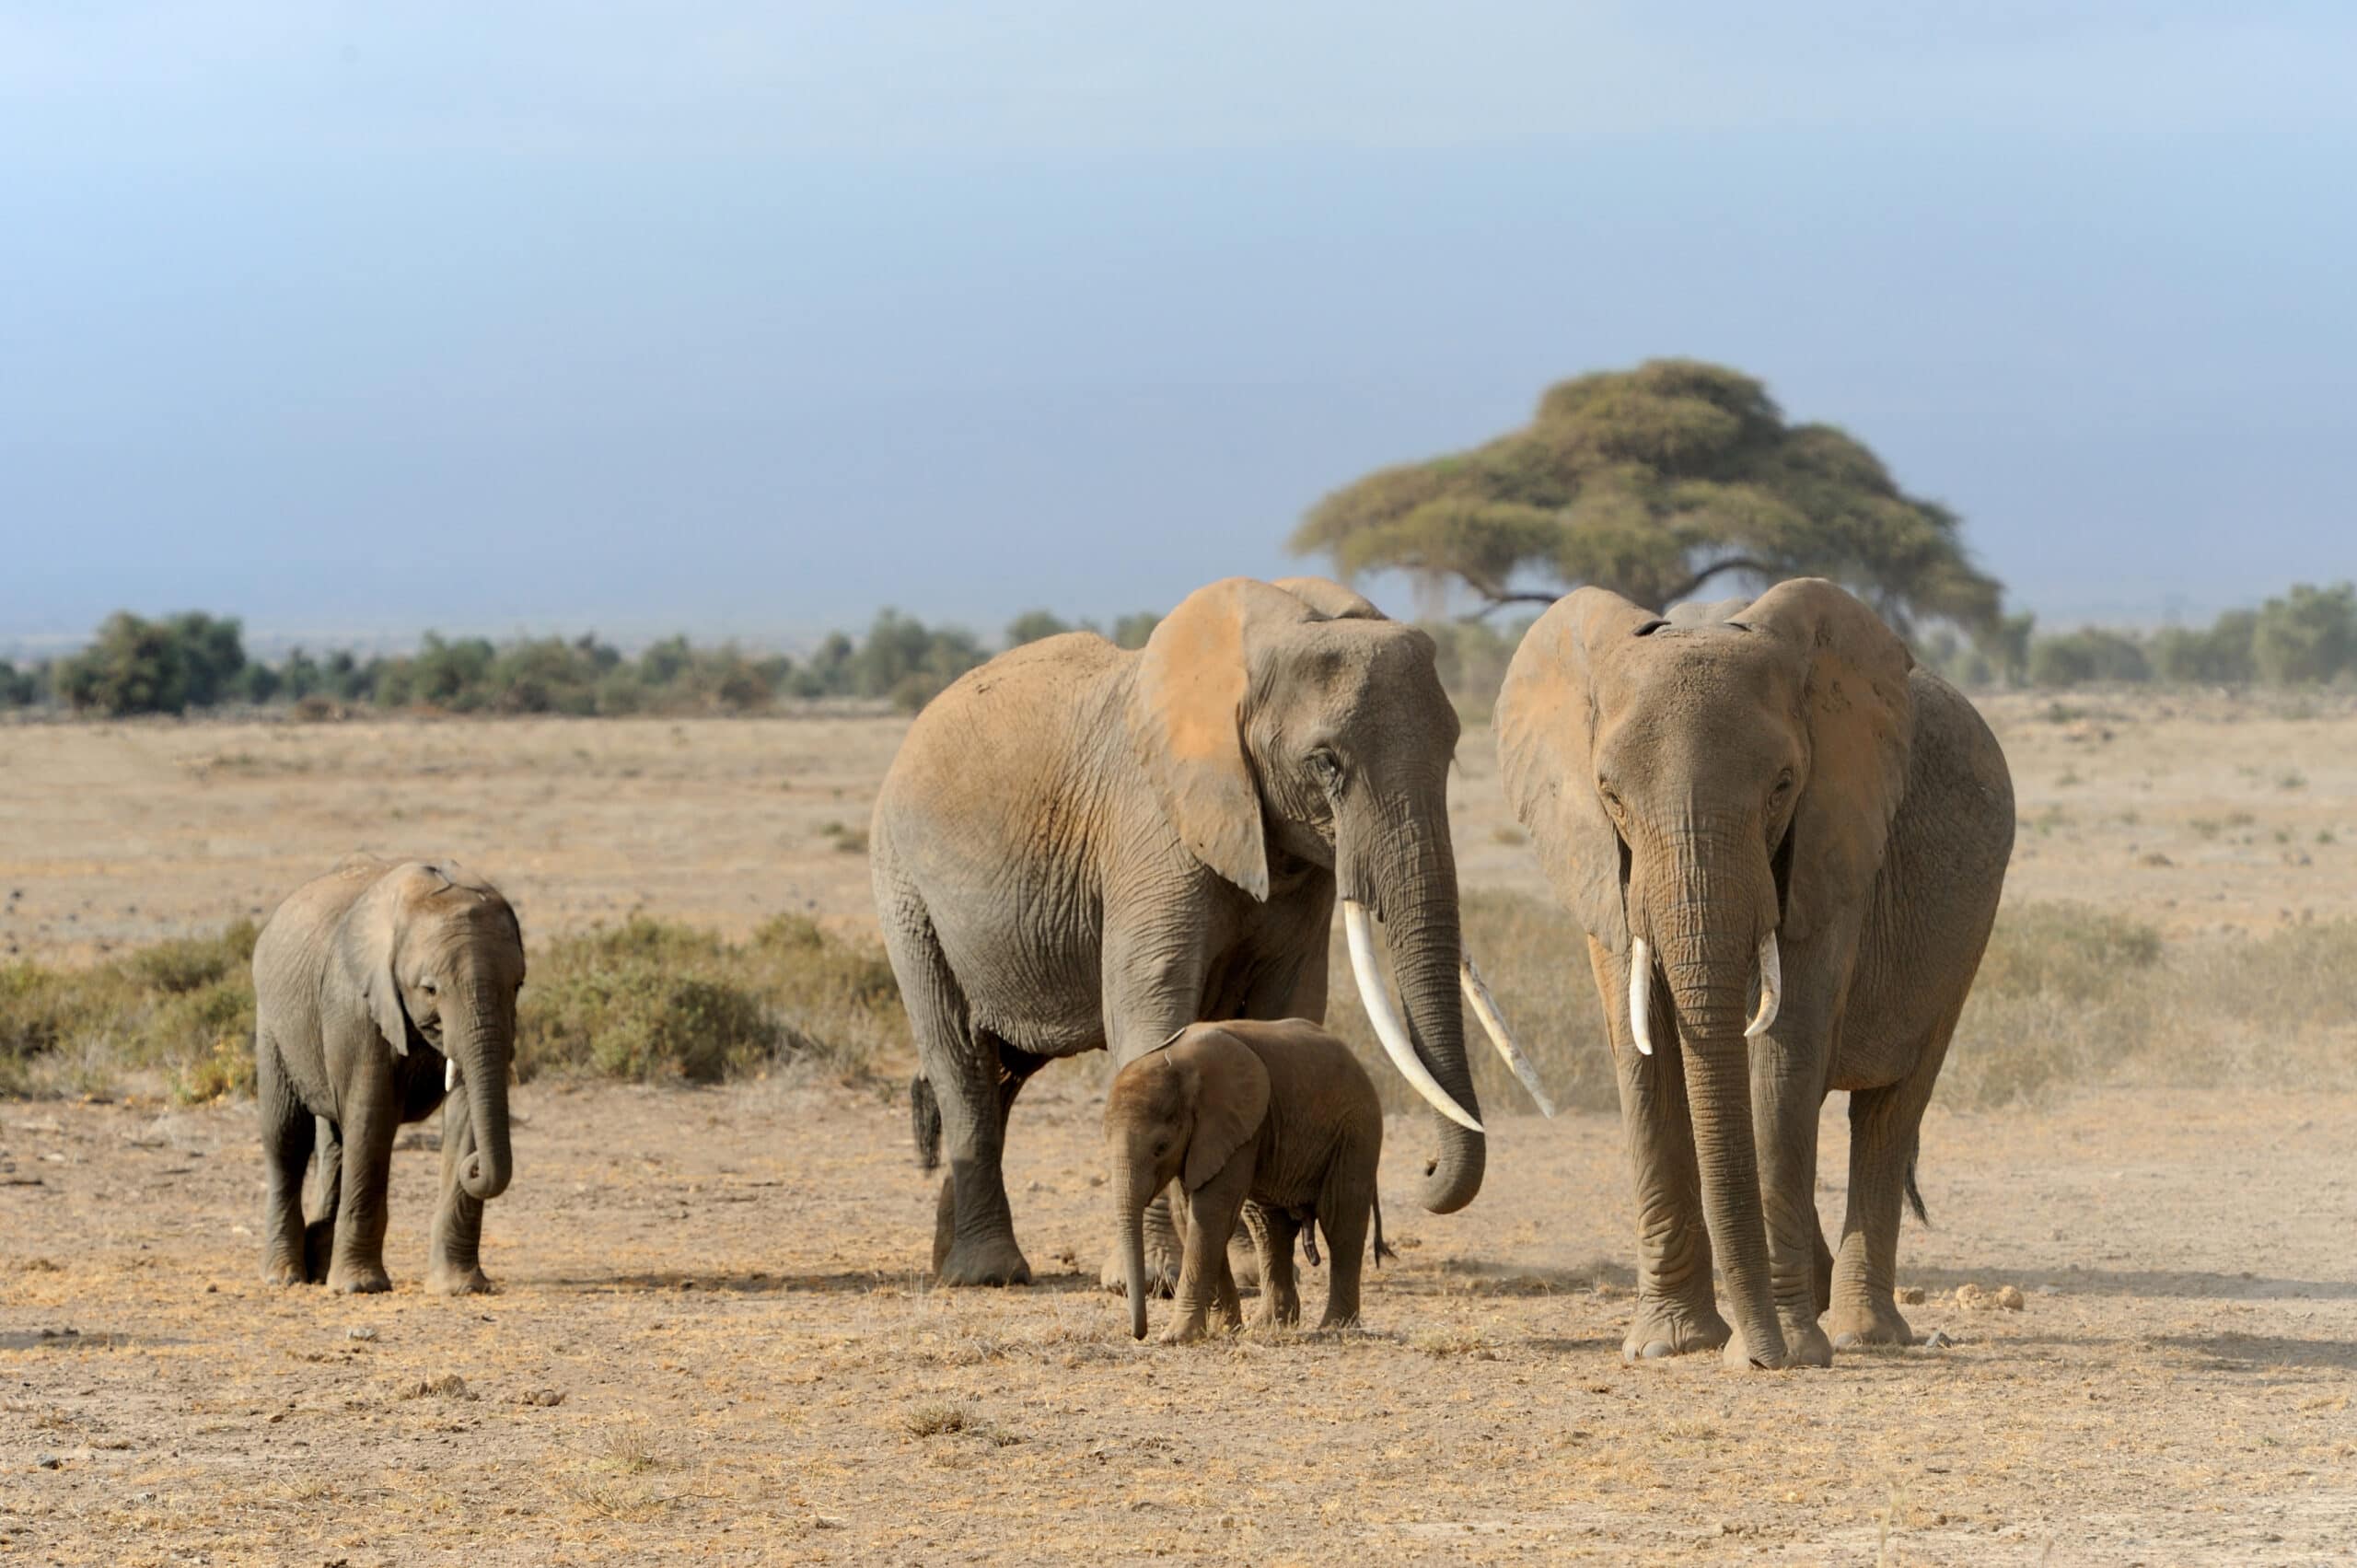 elephant in national park of kenya 2021 08 26 15 55 38 utc scaled